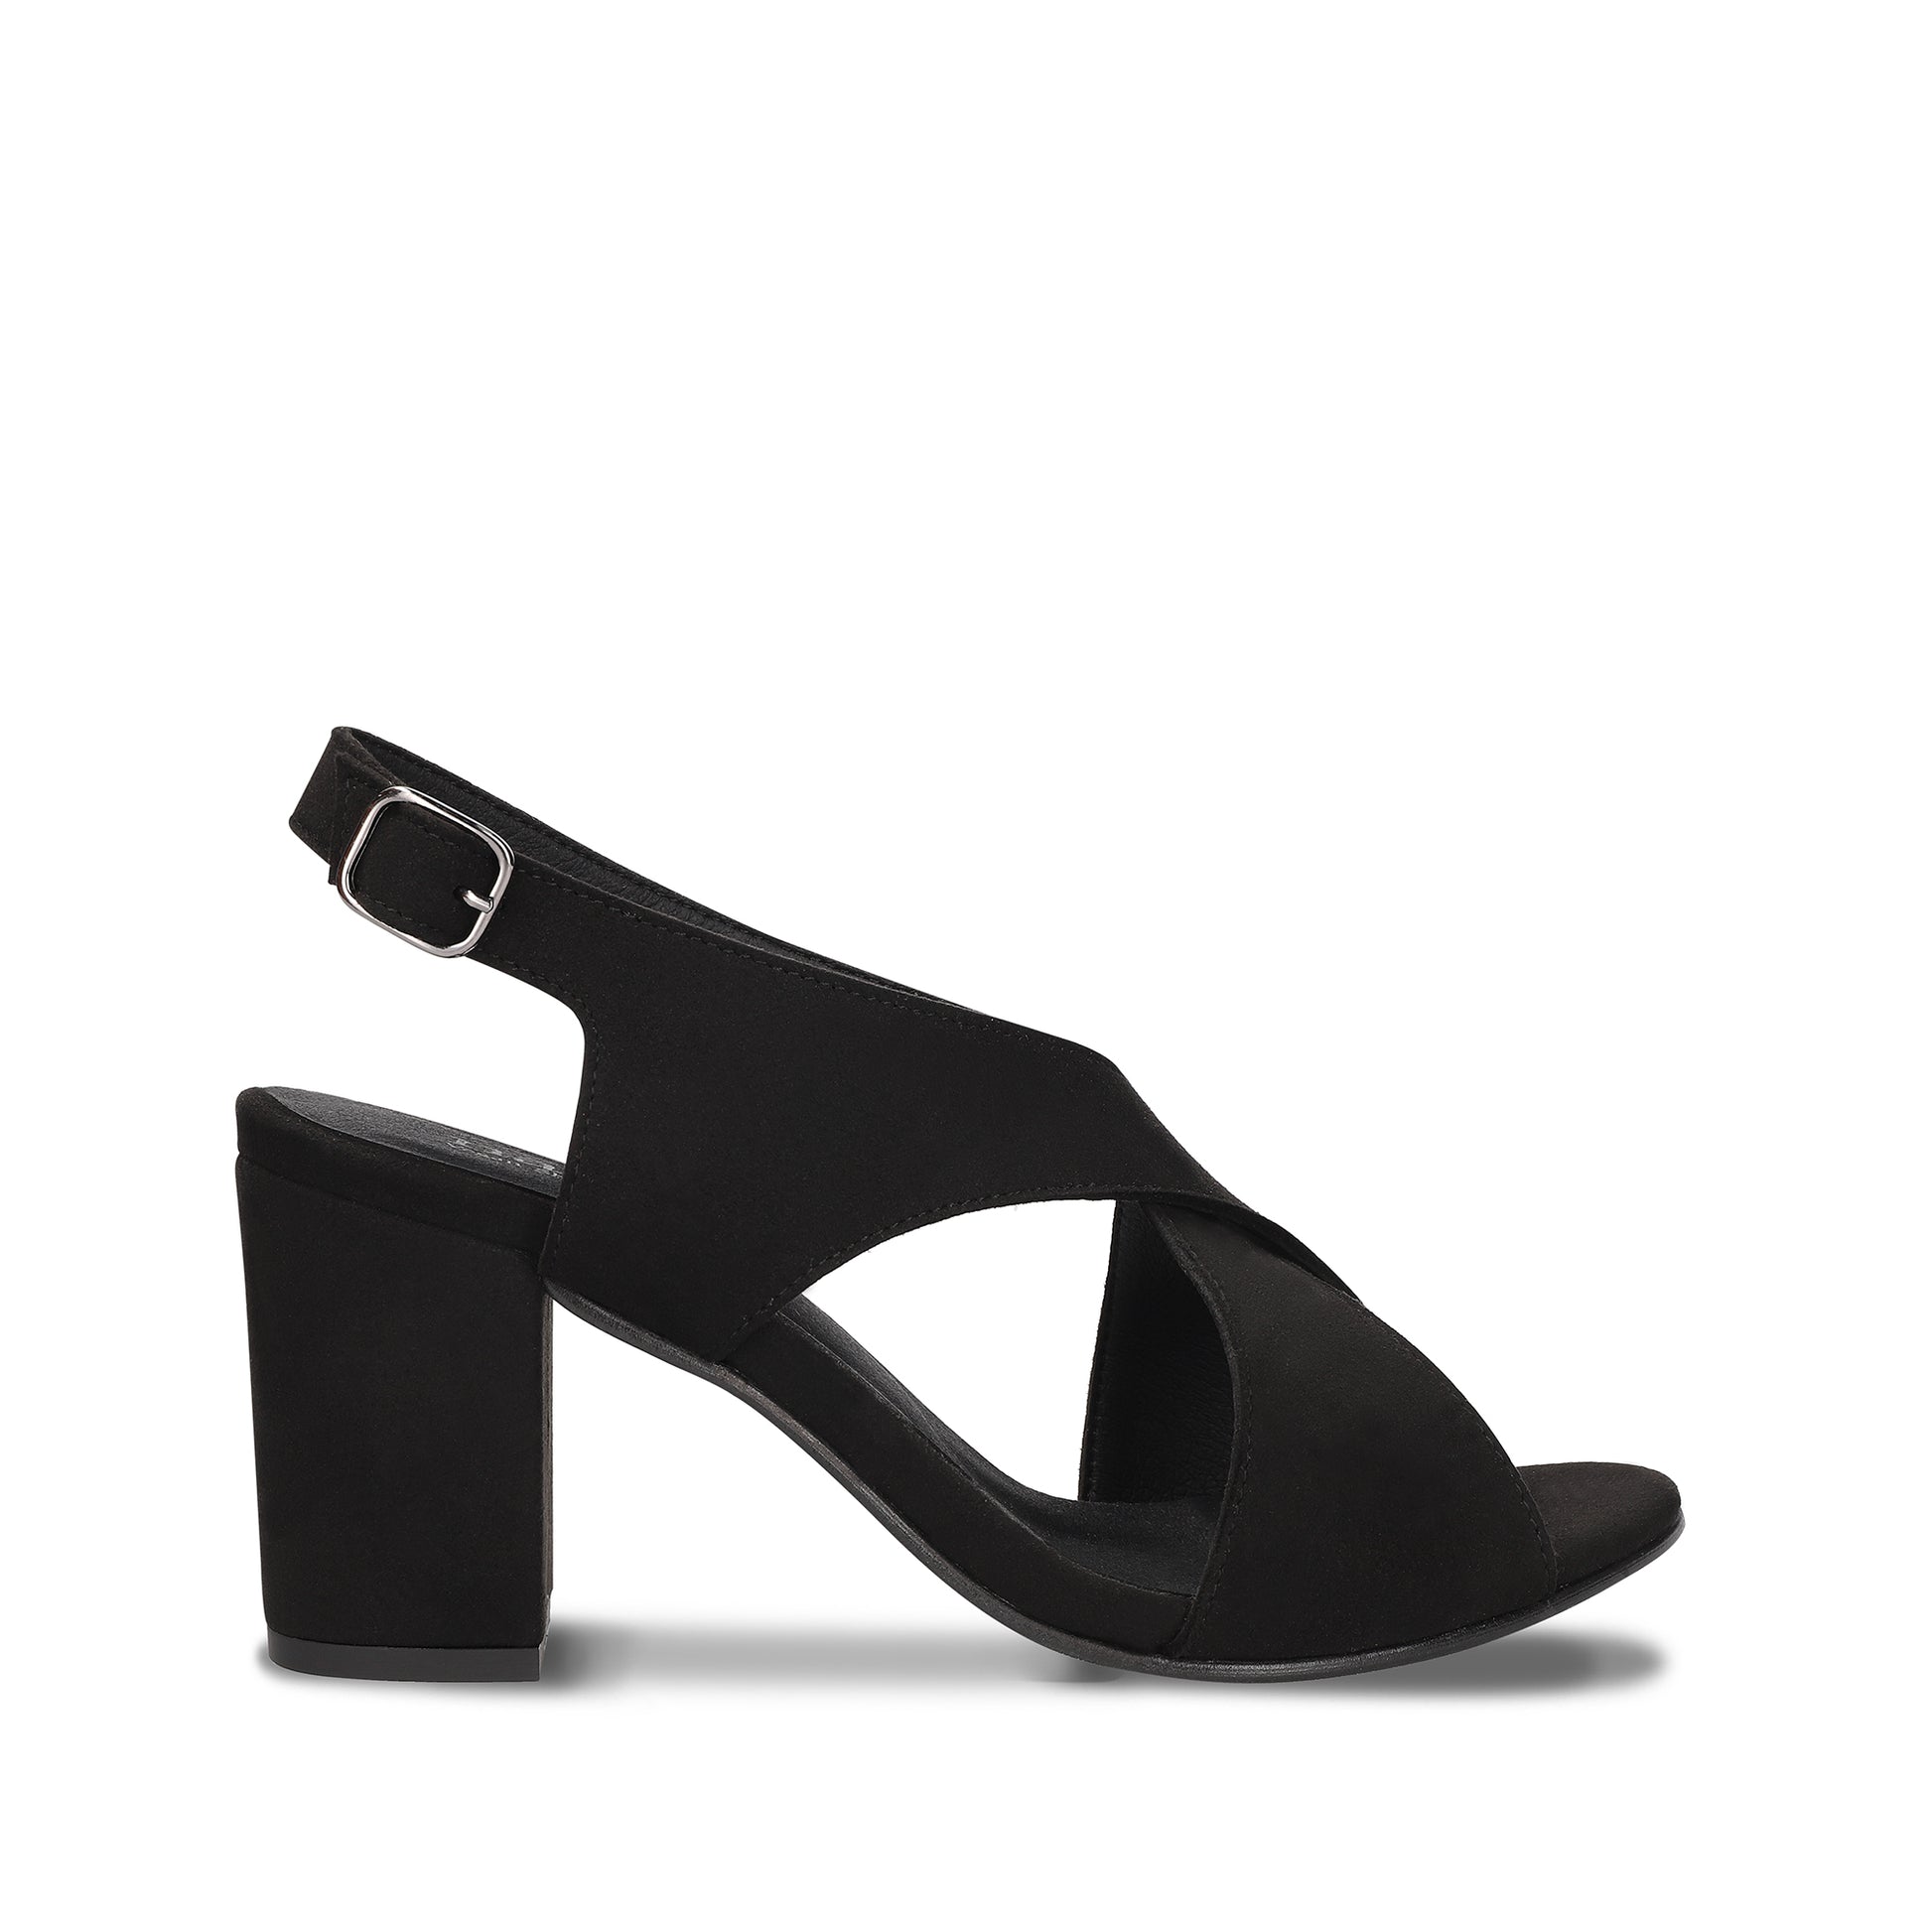 Jasmin Black Vegan heel Sandals with a buckle